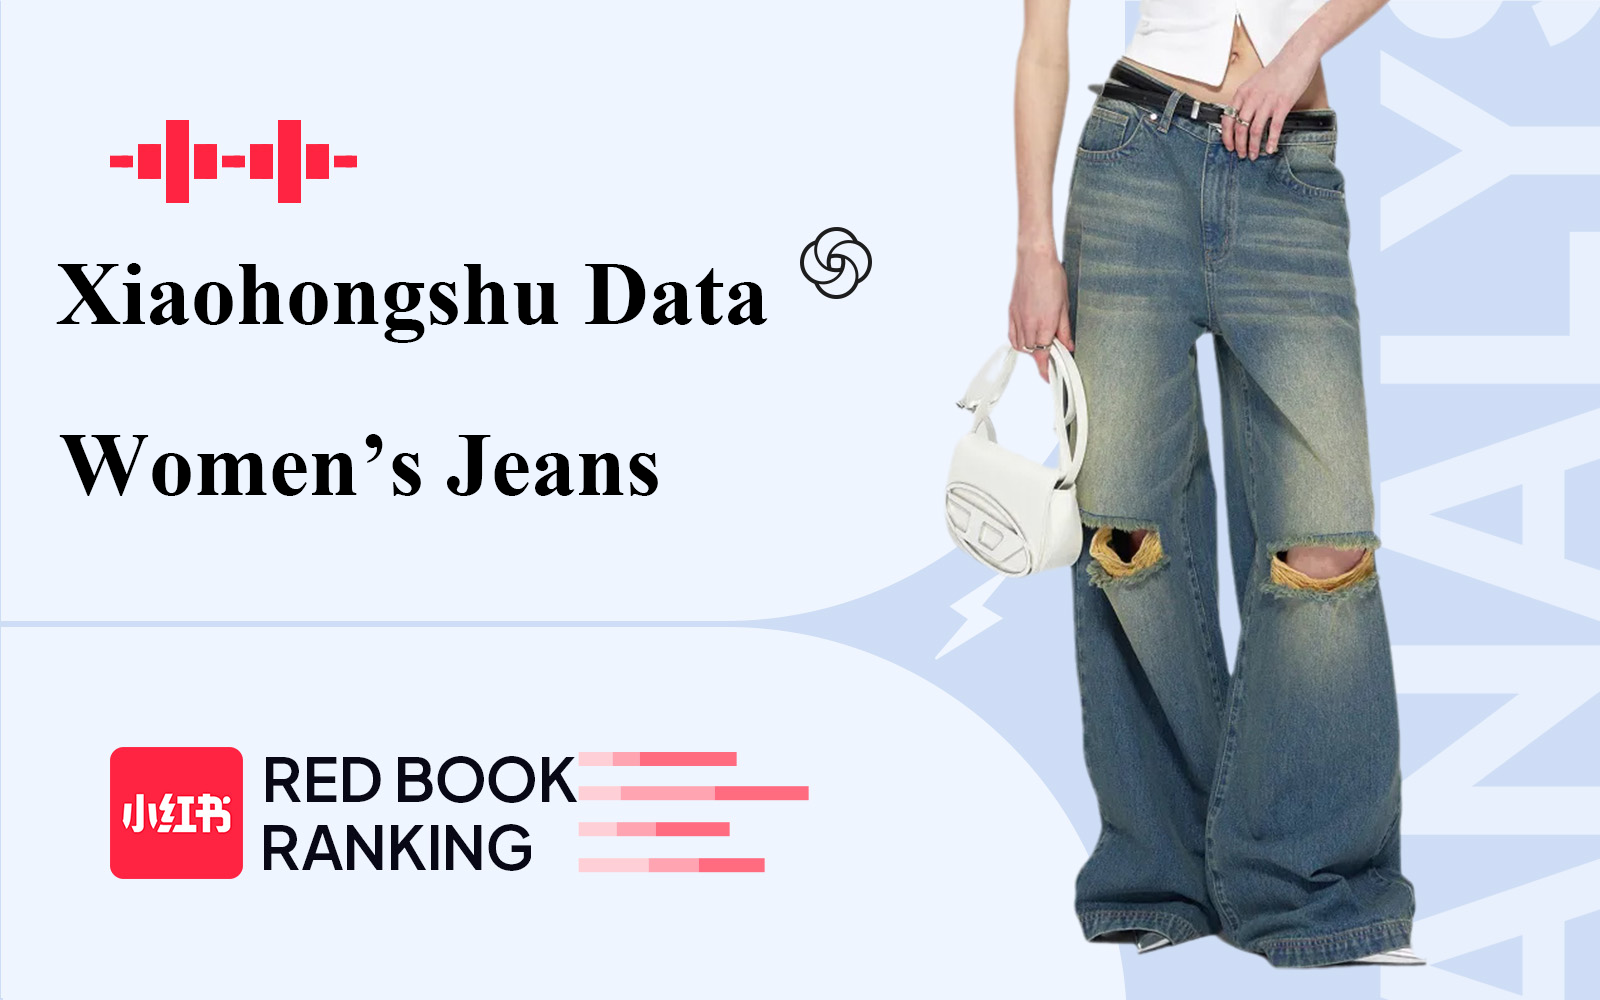 Analysis of E-commerce Data for Women's Denim on Xiaohongshu in December